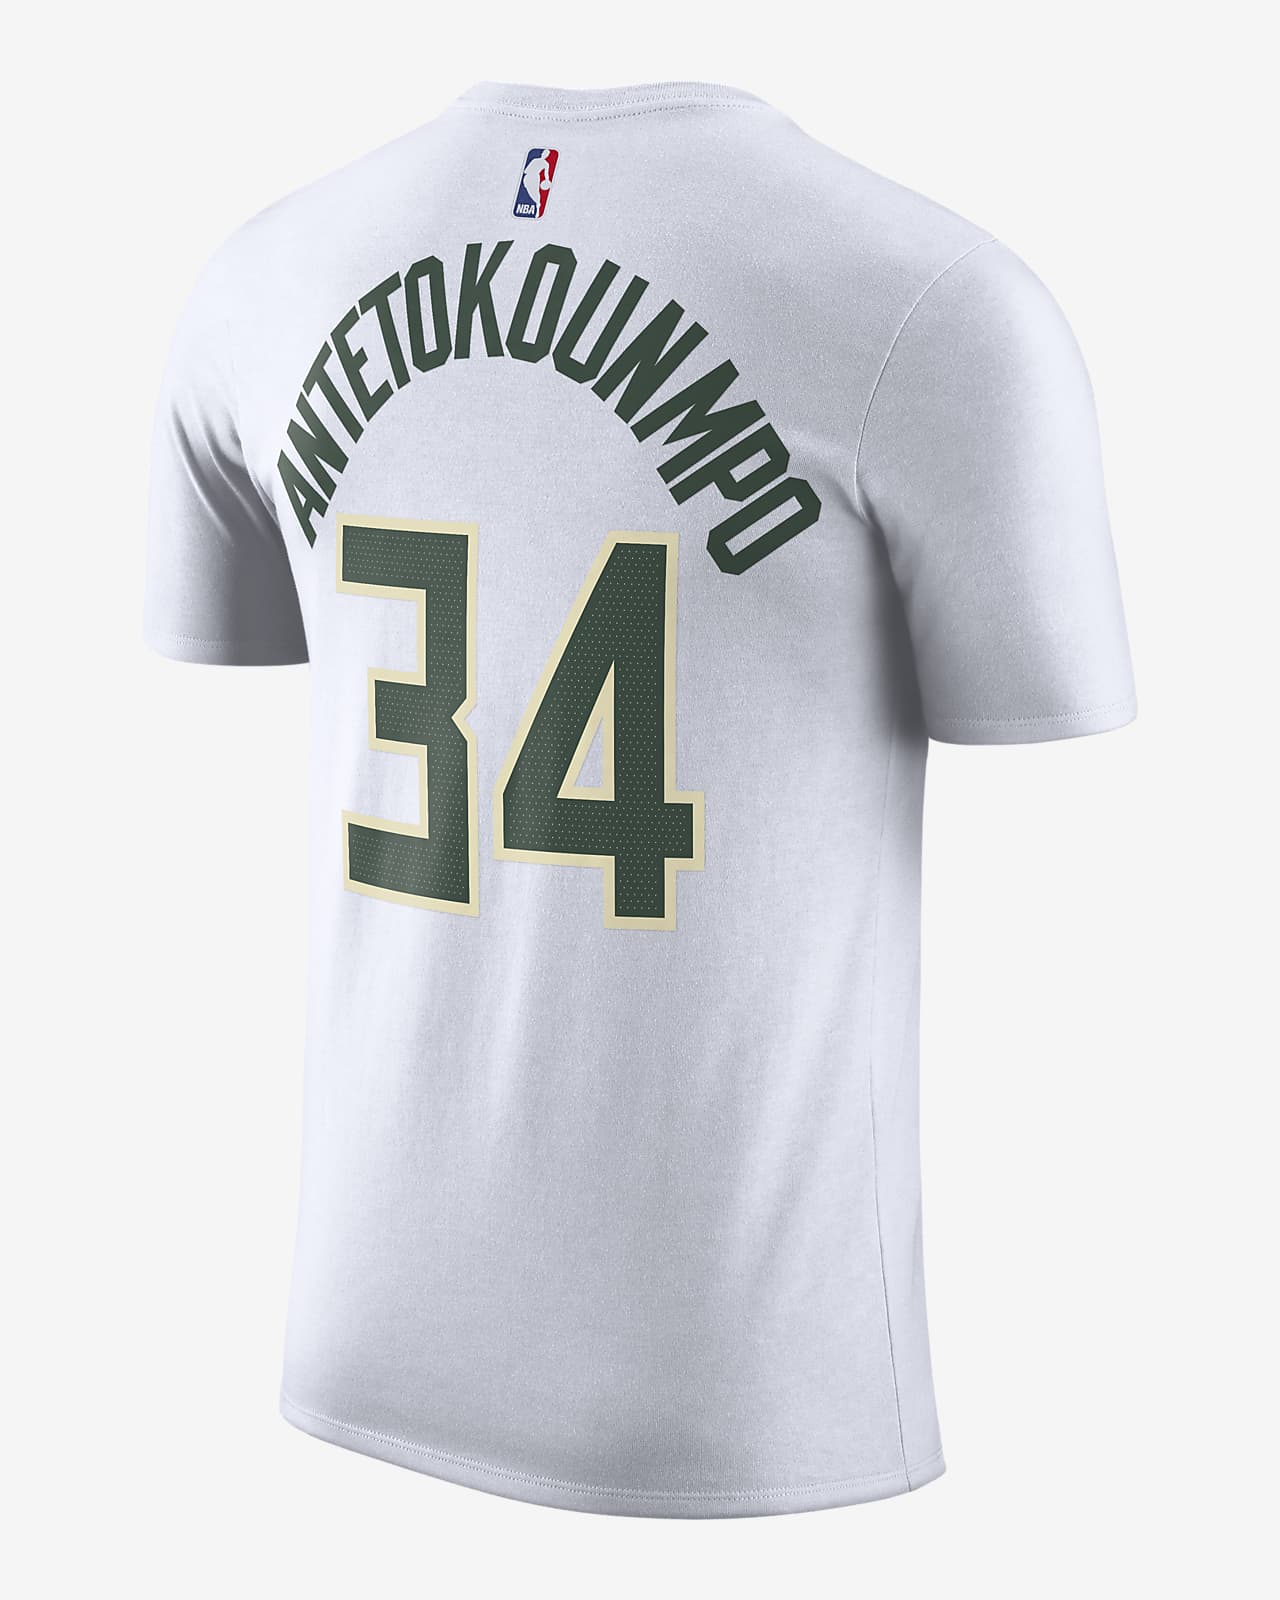 Boston Celtics Men's Nike NBA T-Shirt